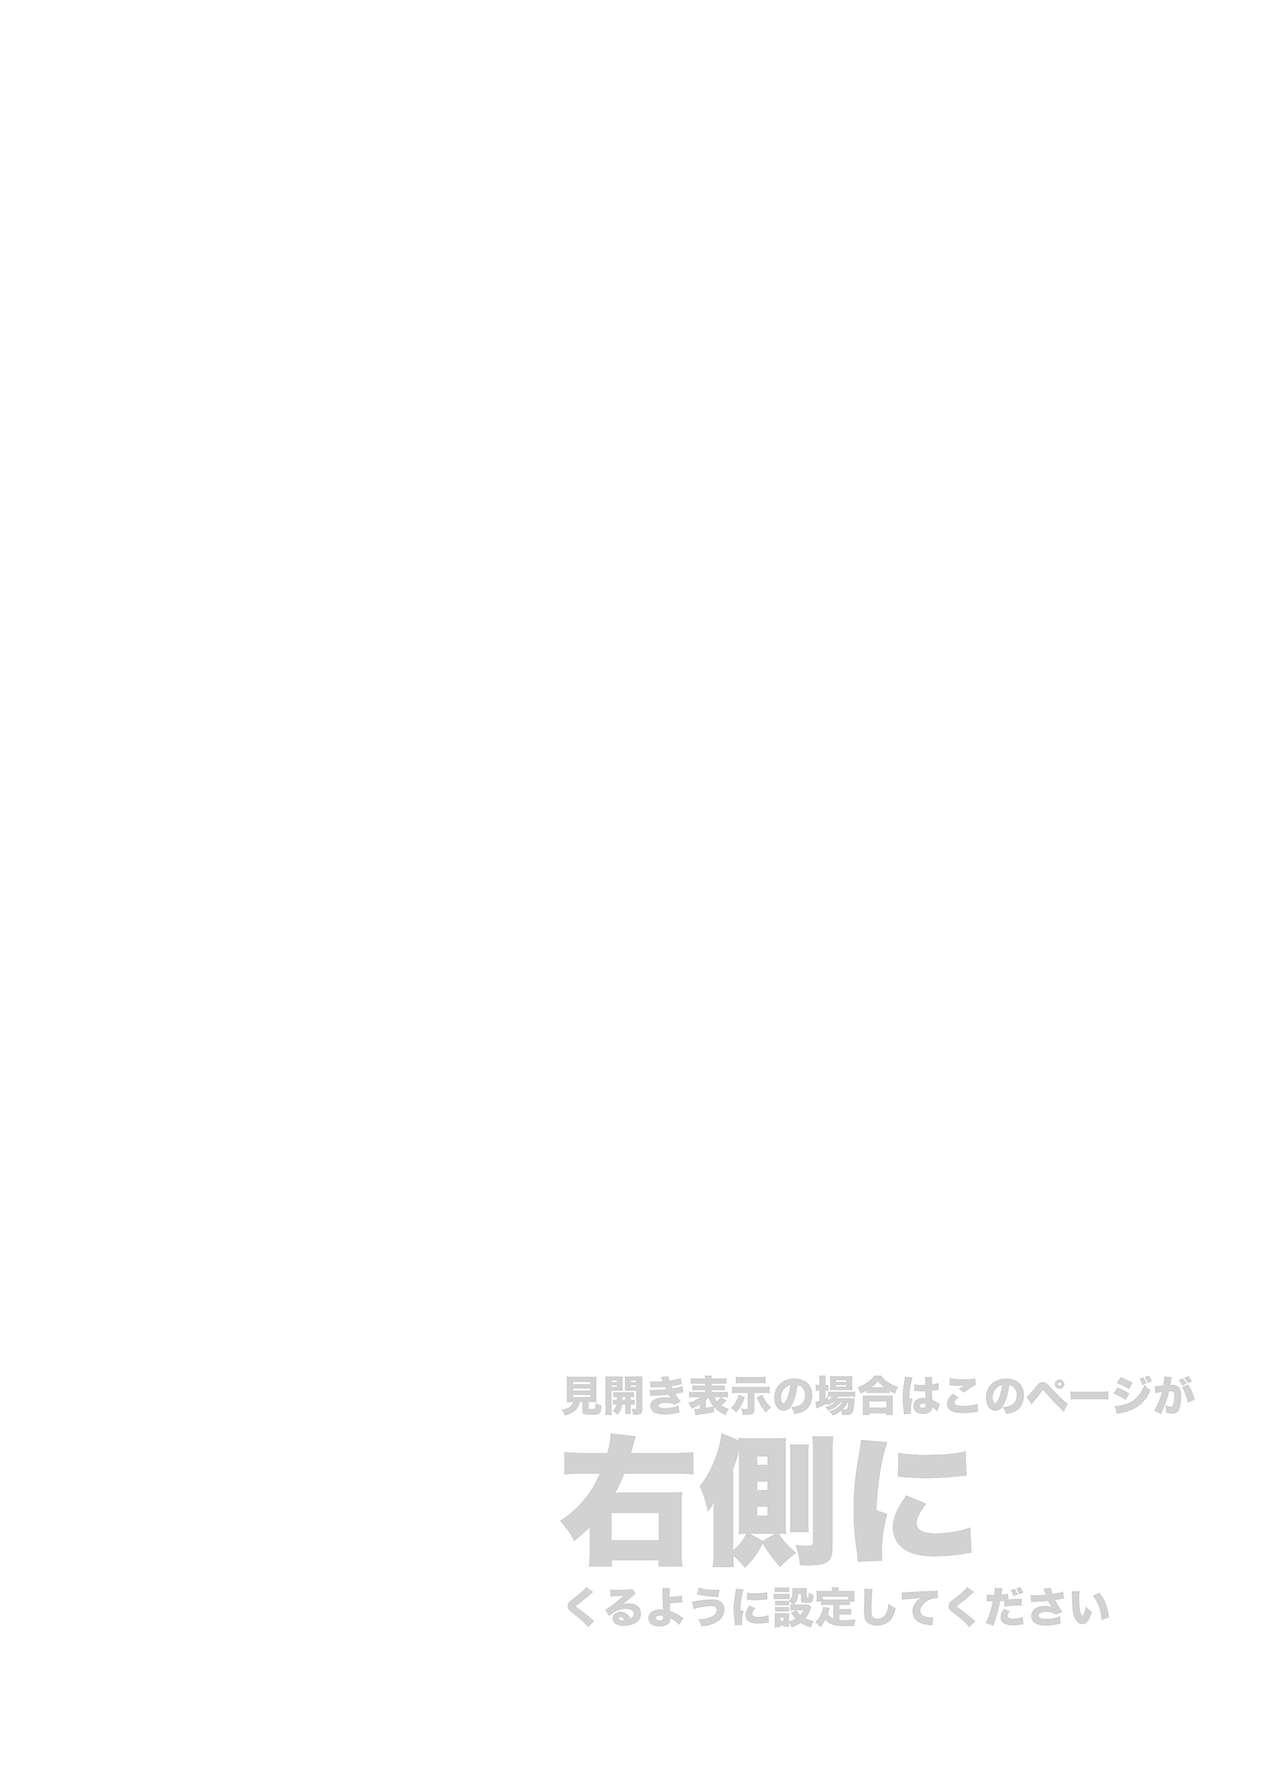 Tamil Kore wa Kintore Nanda Honto dayo Shinjite - Mobile suit gundam tekketsu no orphans European - Page 2